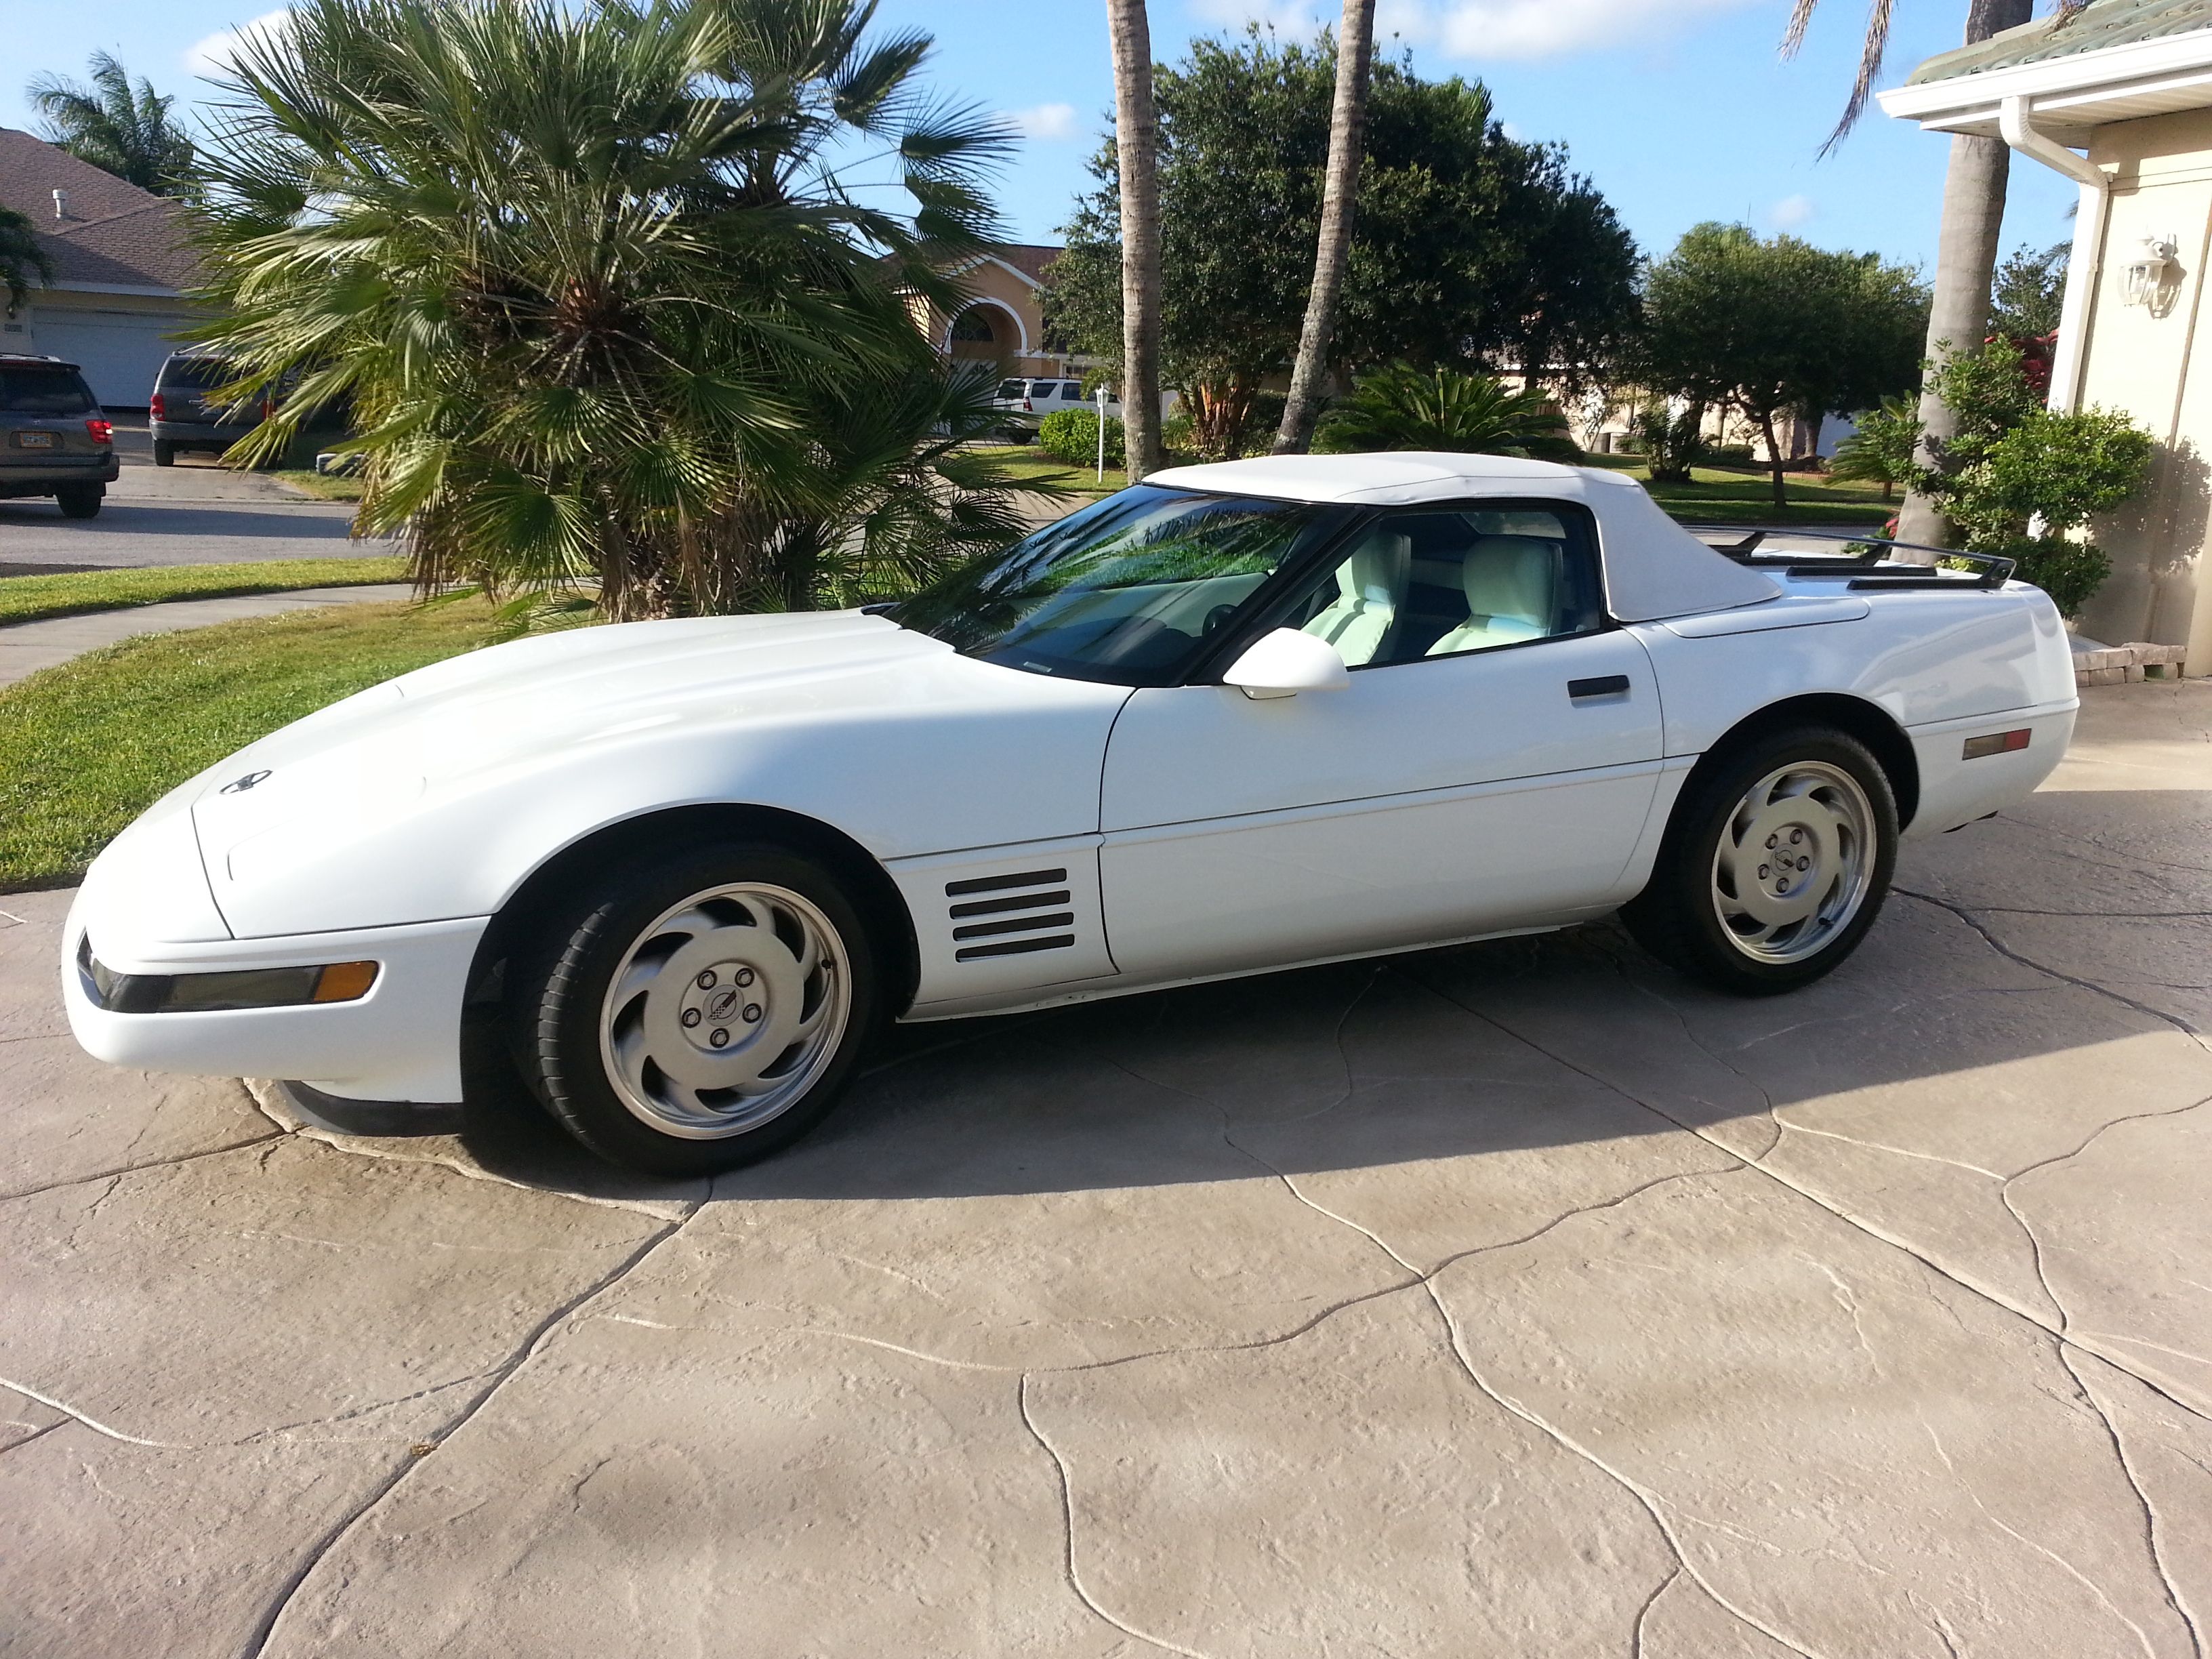 Tom's 1992 Corvette